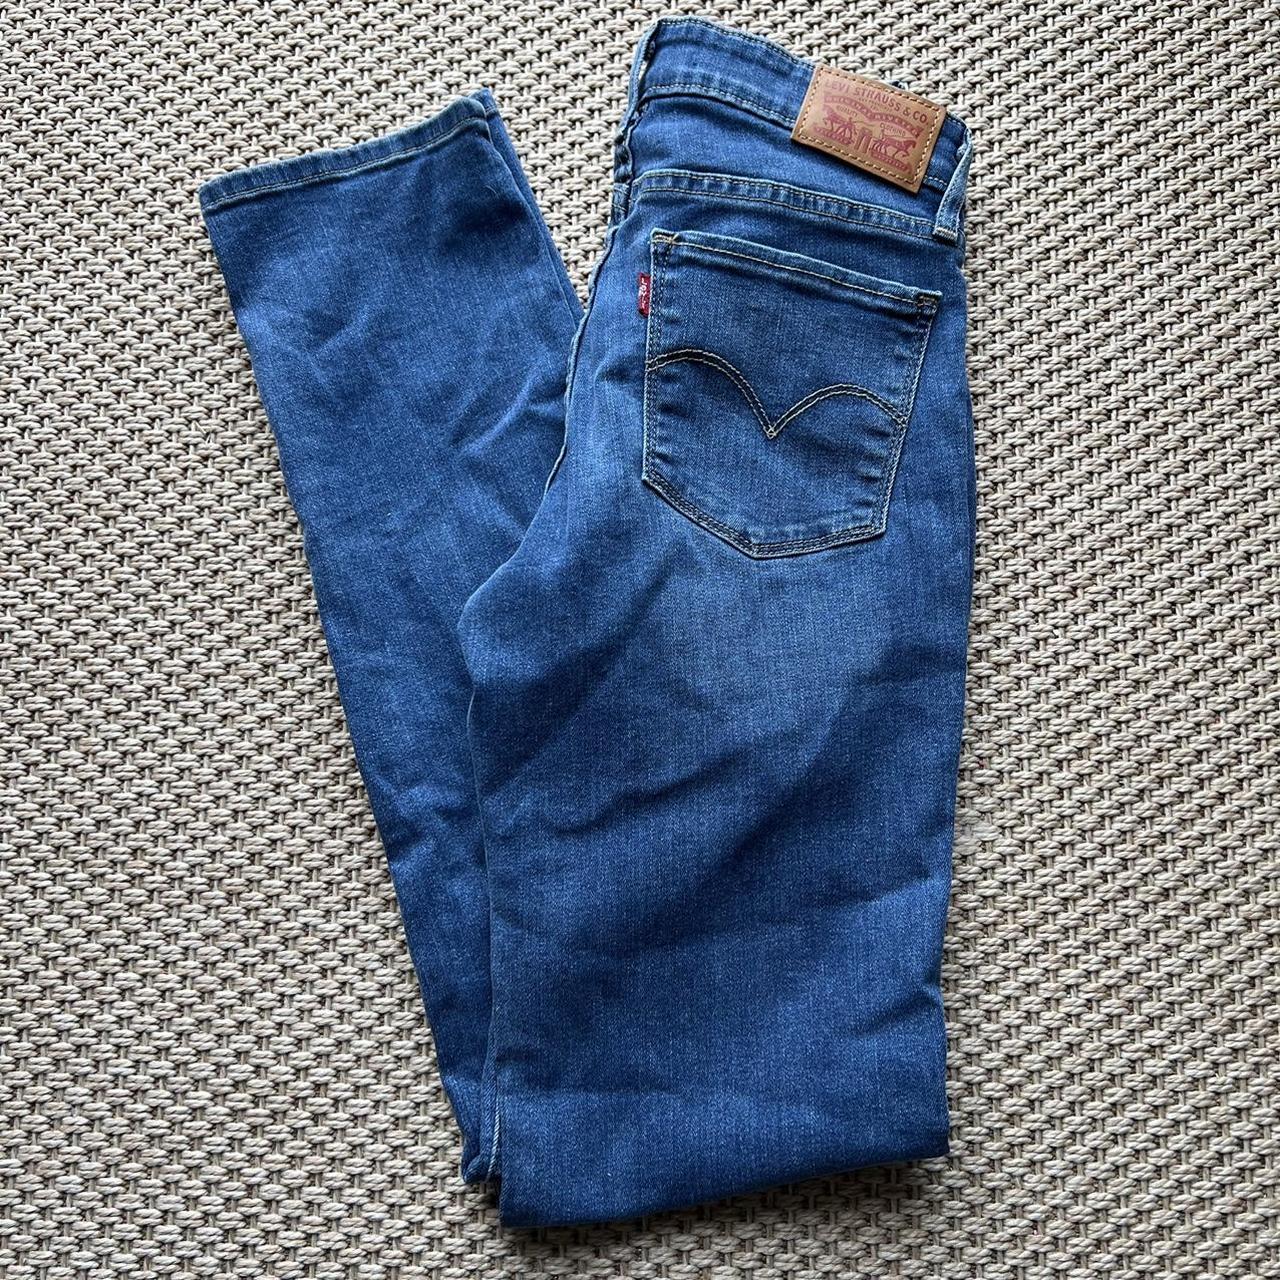 Authentic Levi's denim jeans Slim fit Style 712,... - Depop